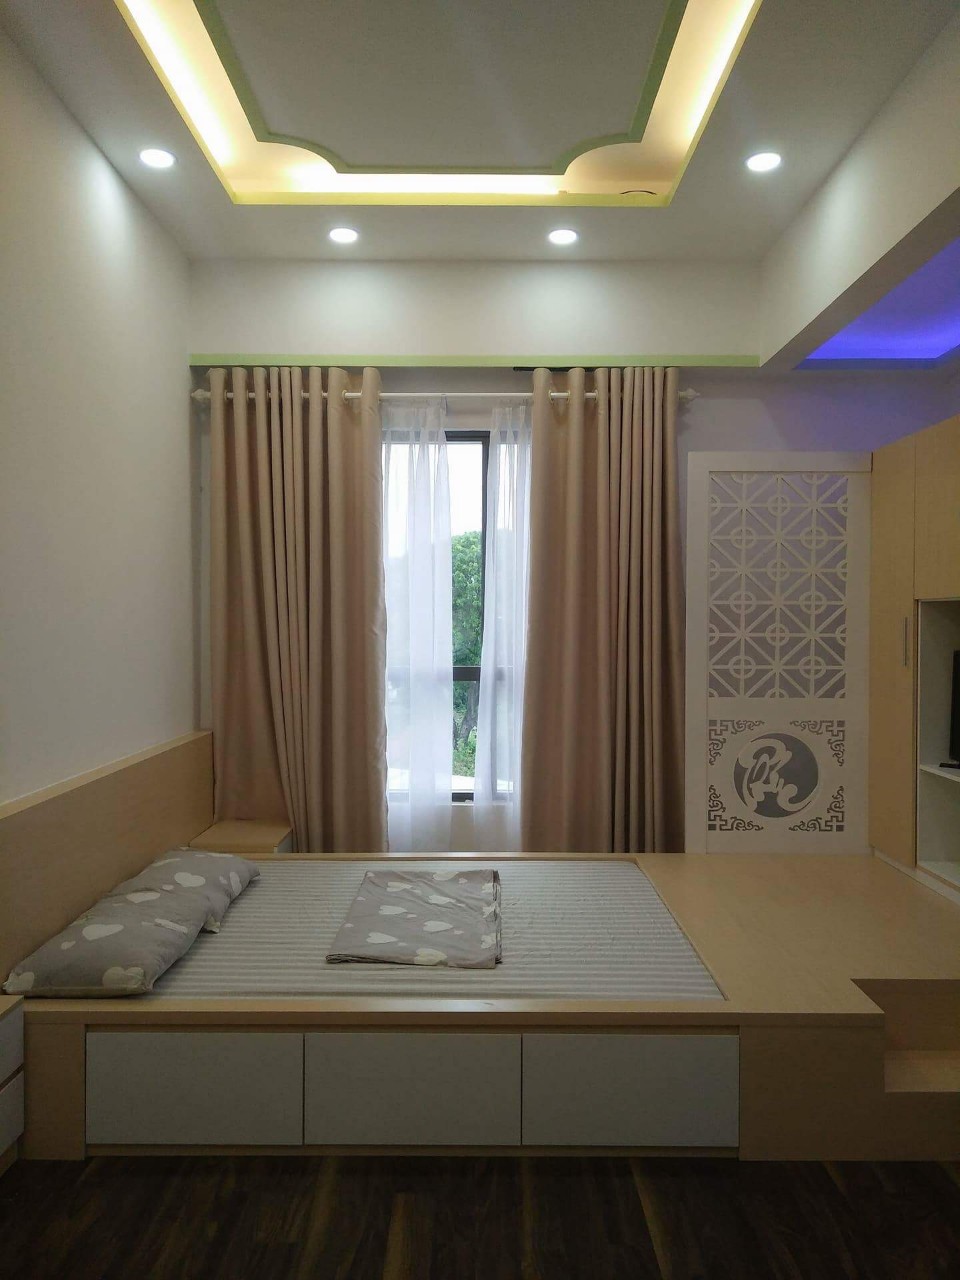 Cho thuê căn hộ studio chung cư Garden Gate, Phú Nhuận - 0908879243 Tuấn ( quản lý cho thuê)